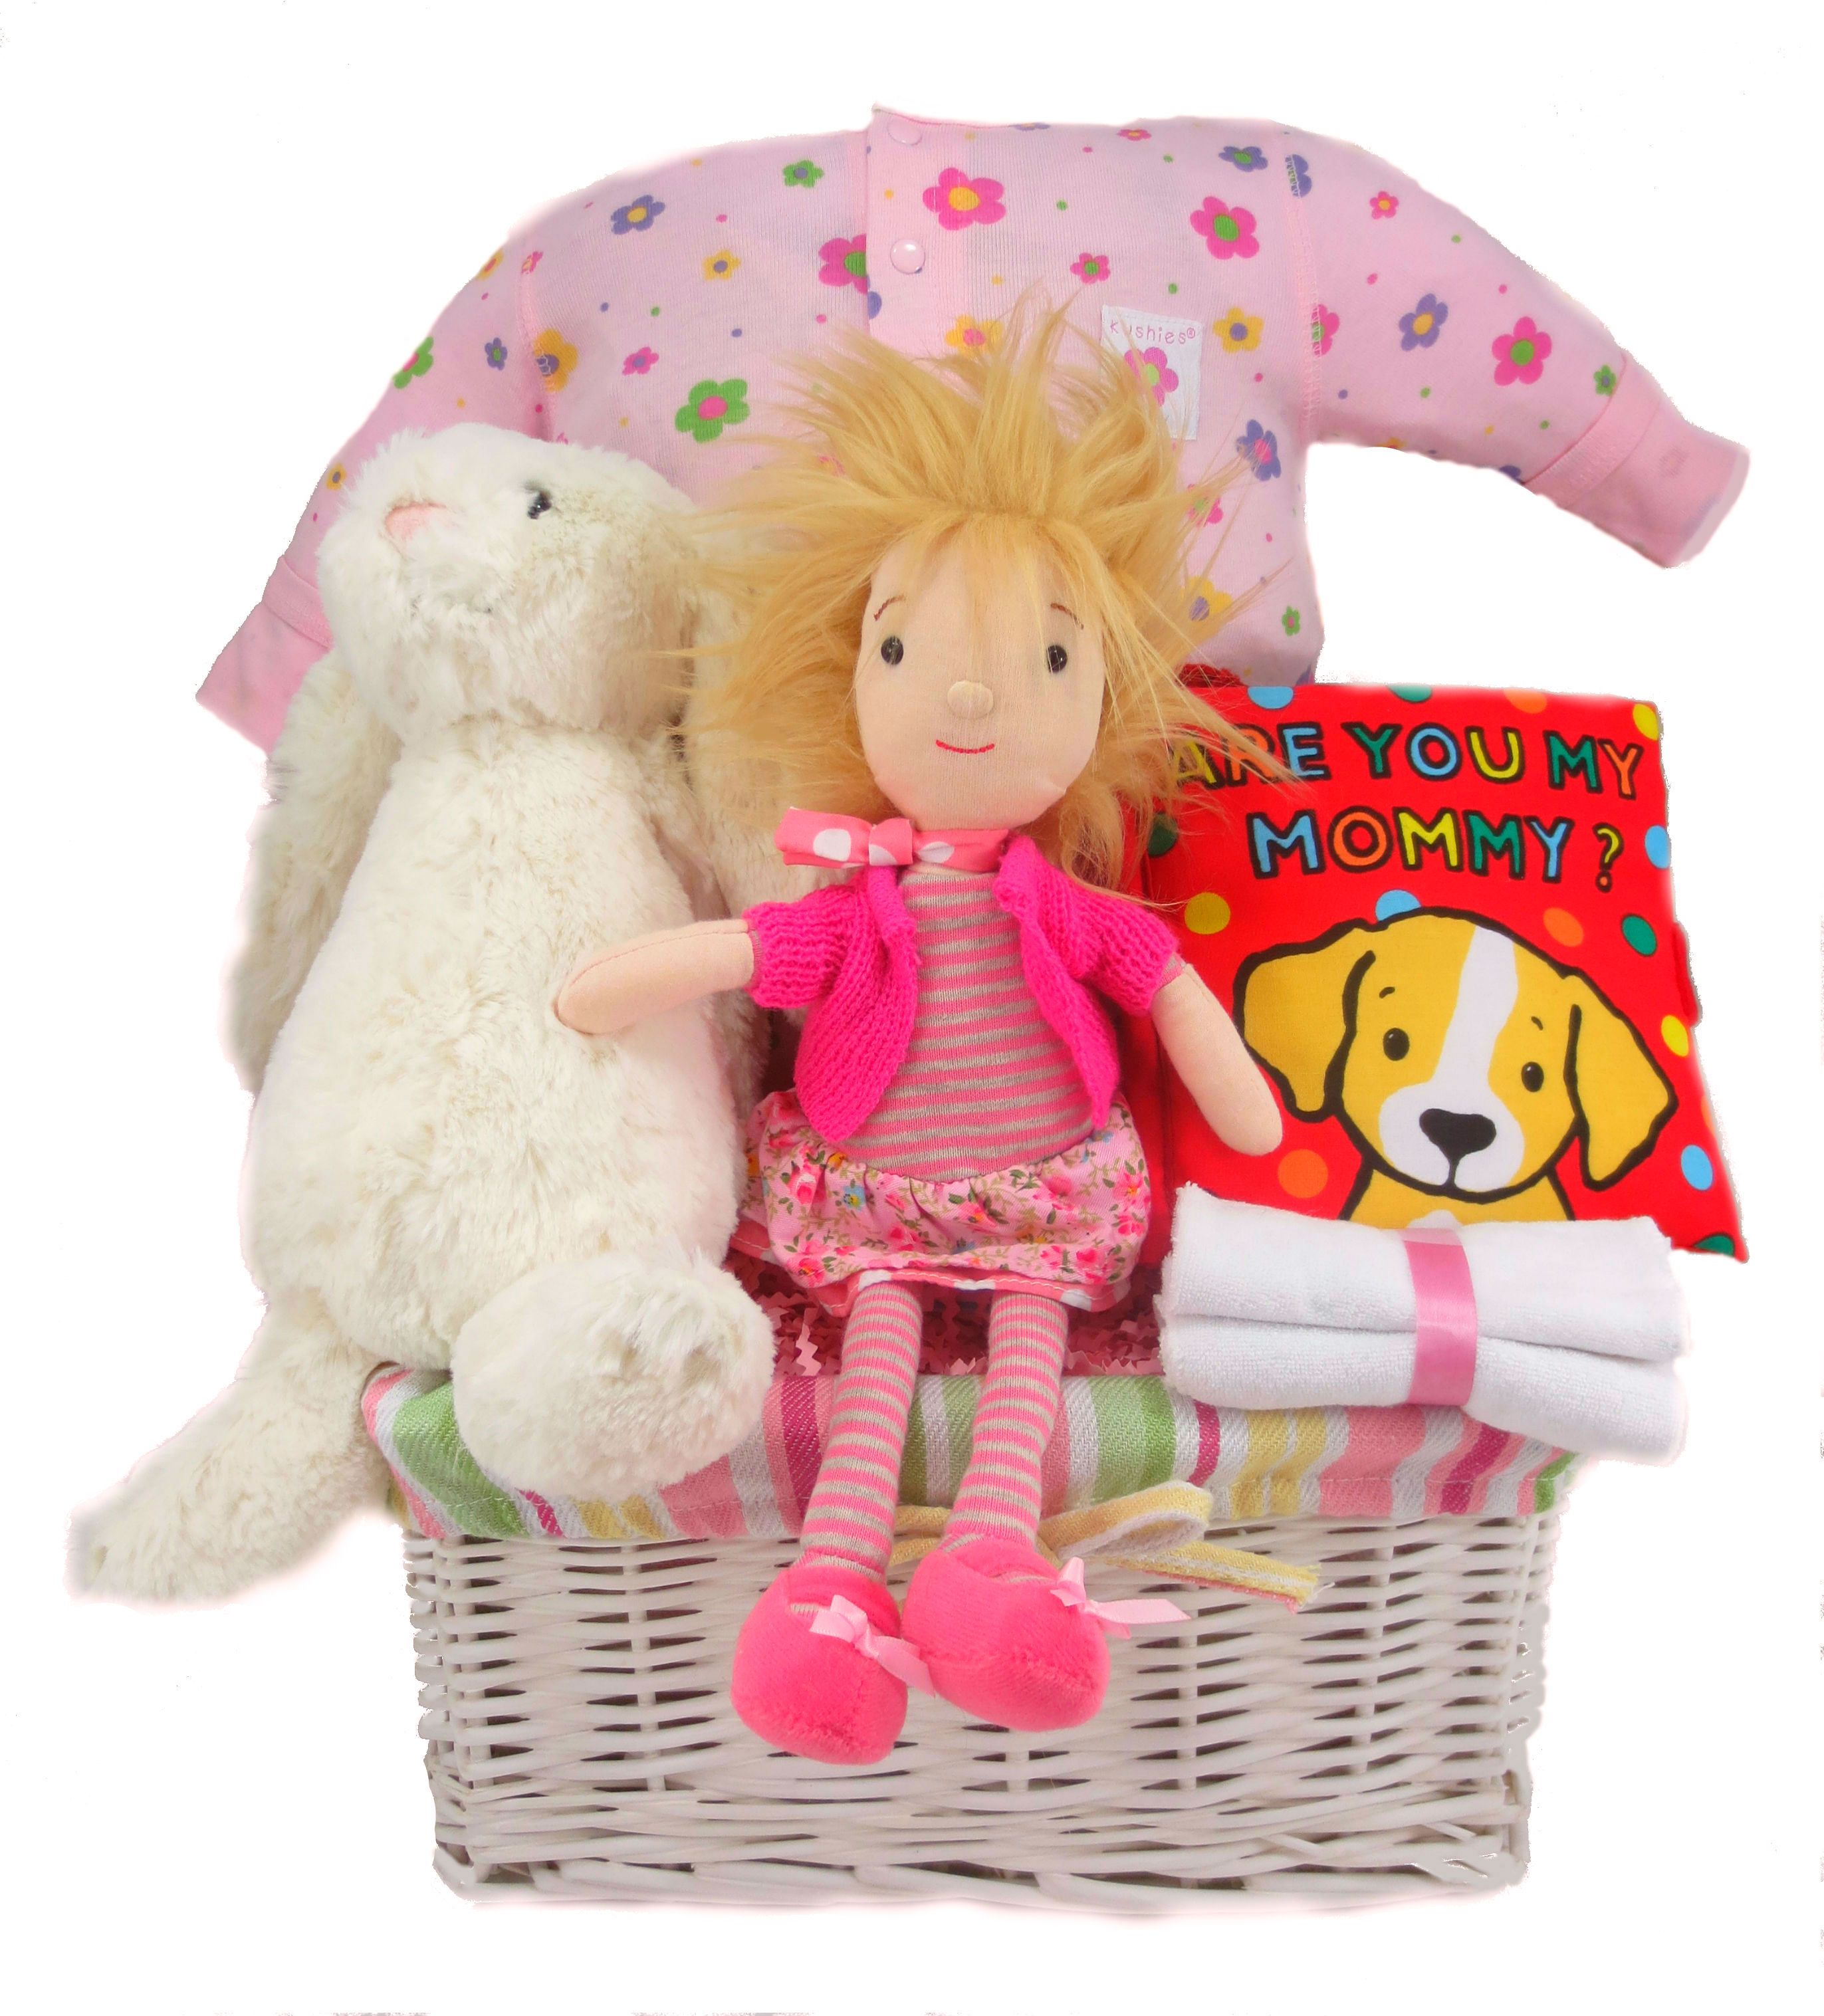 Jelle Belle Daisy Baby Gift Basket